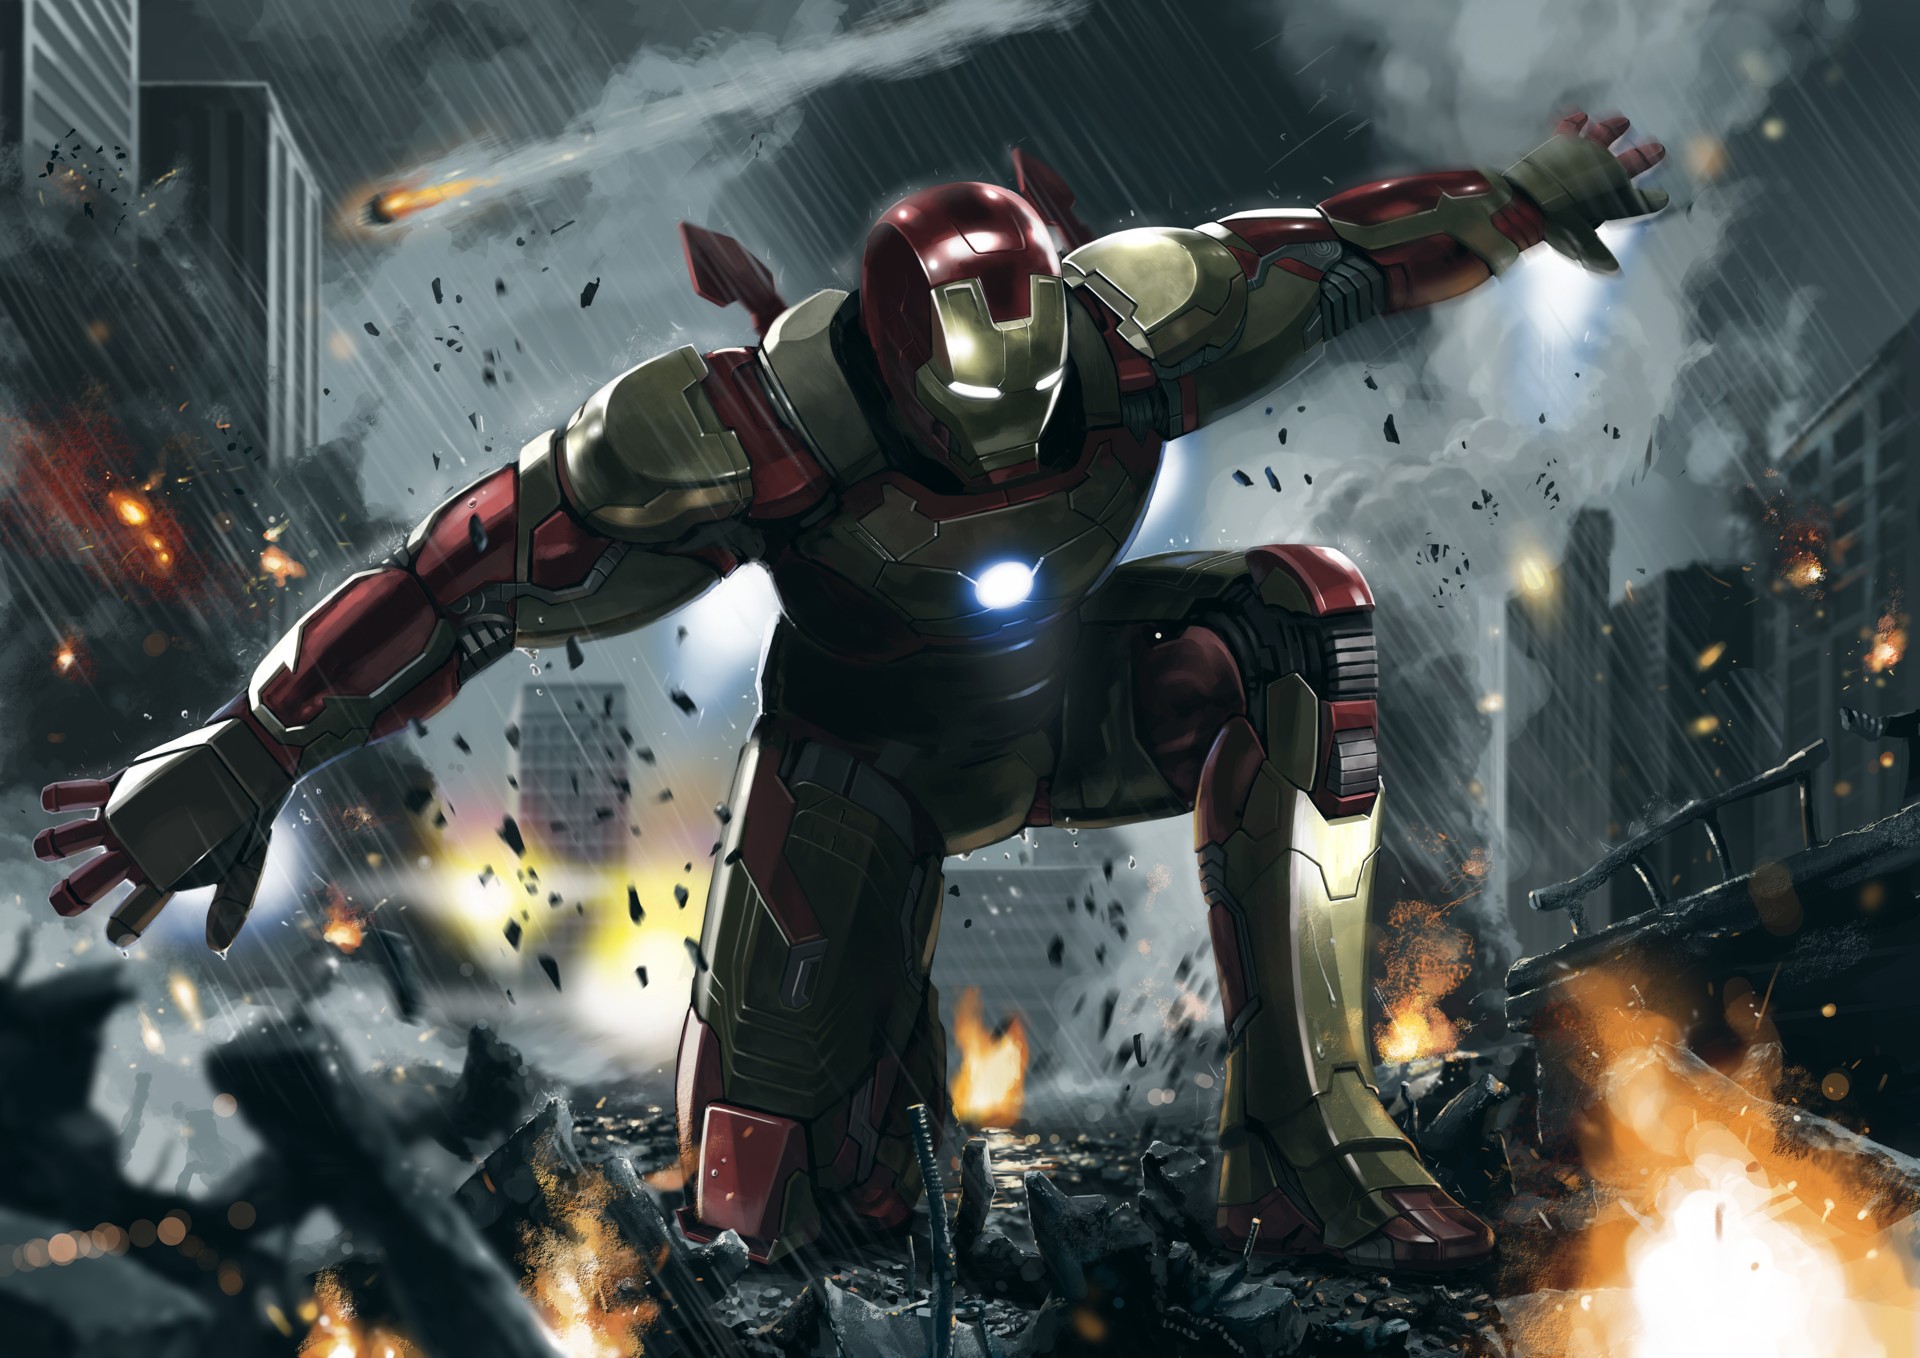 Hình nền người sắt Iron Man đẹp và ngầu chính là điểm nhấn vô cùng ấn tượng cho ngoại hình điện thoại của bạn. Bản thân hình ảnh nhân vật siêu anh hùng rất đẹp và sang trọng, khiến bạn tự tin và phong cách hơn khi sử dụng điện thoại của mình.